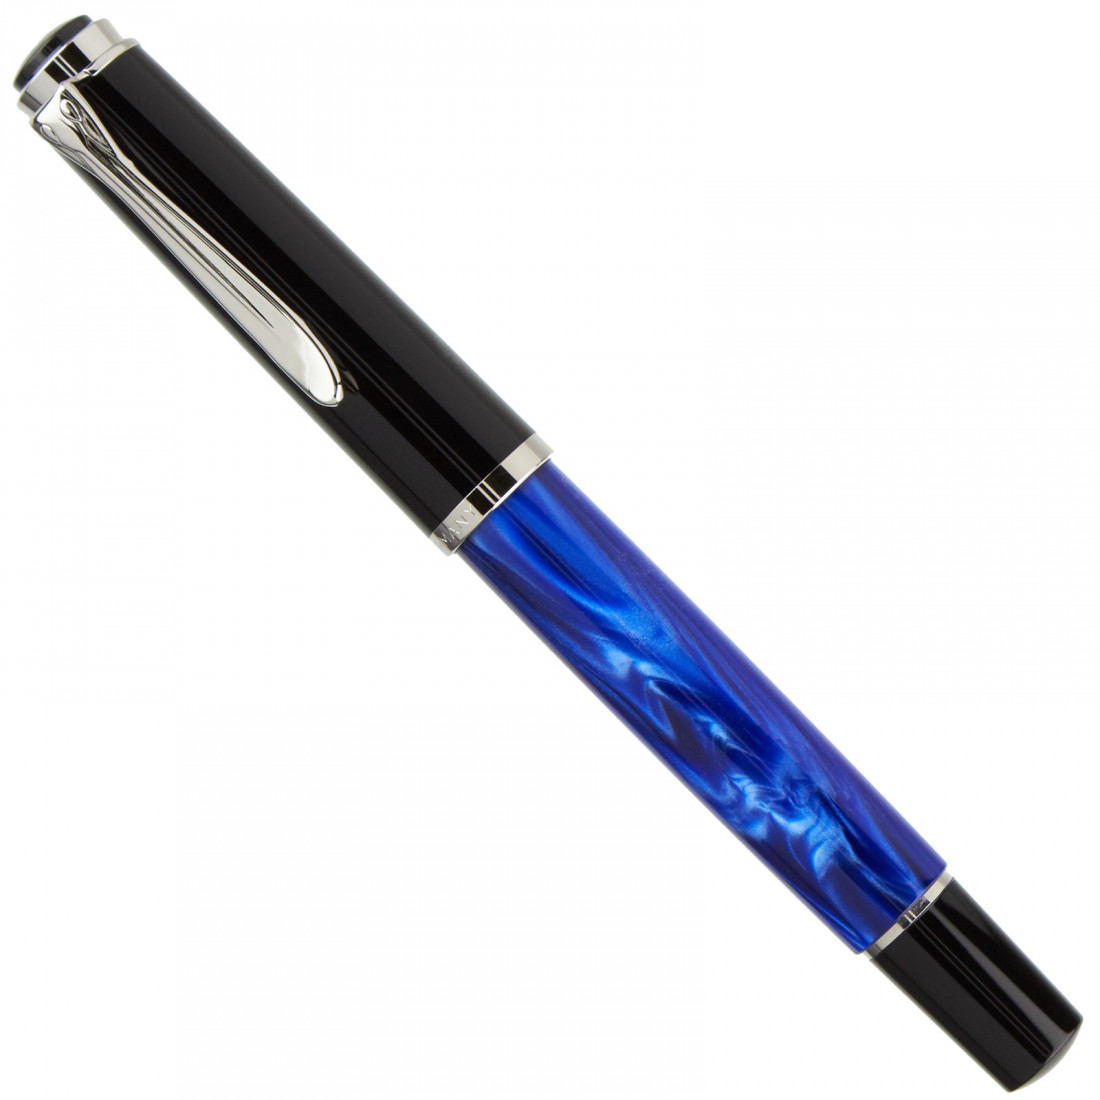 Pelikan M205 Blue Marbled Fountain Pen Fine/Medium/Broad nib